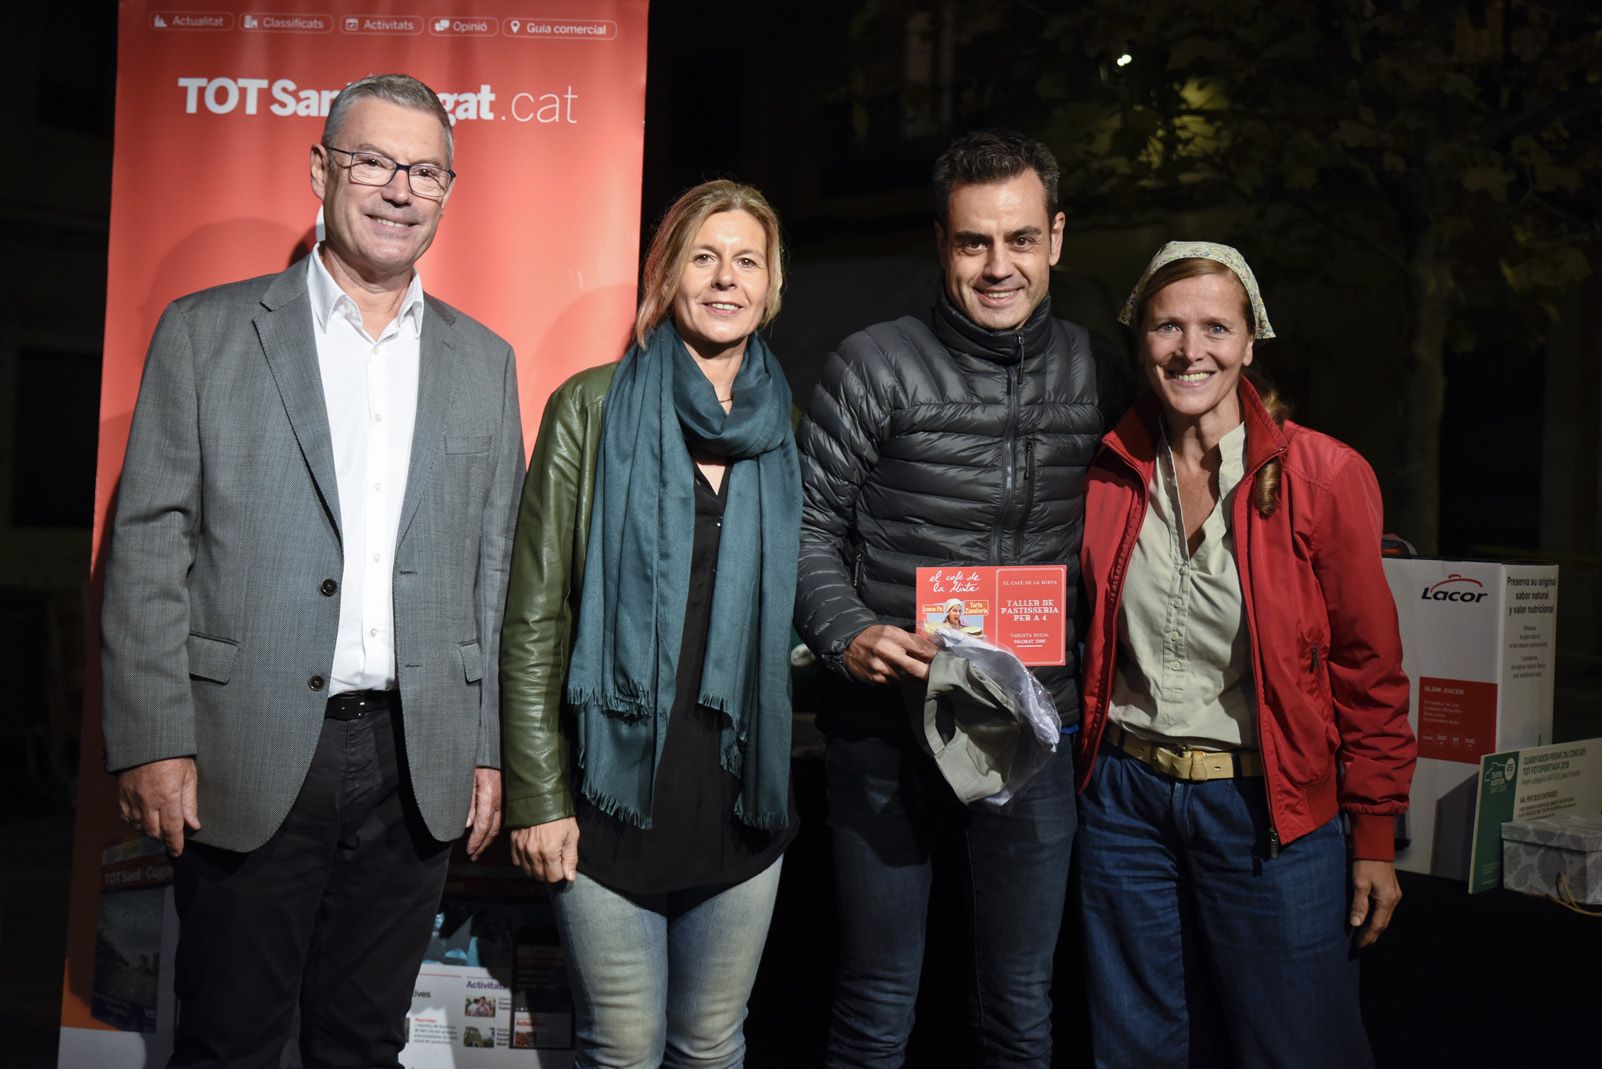 Lliurament de premis del concurs TOT Fotoportada 2018. Foto: Bernat Millet.